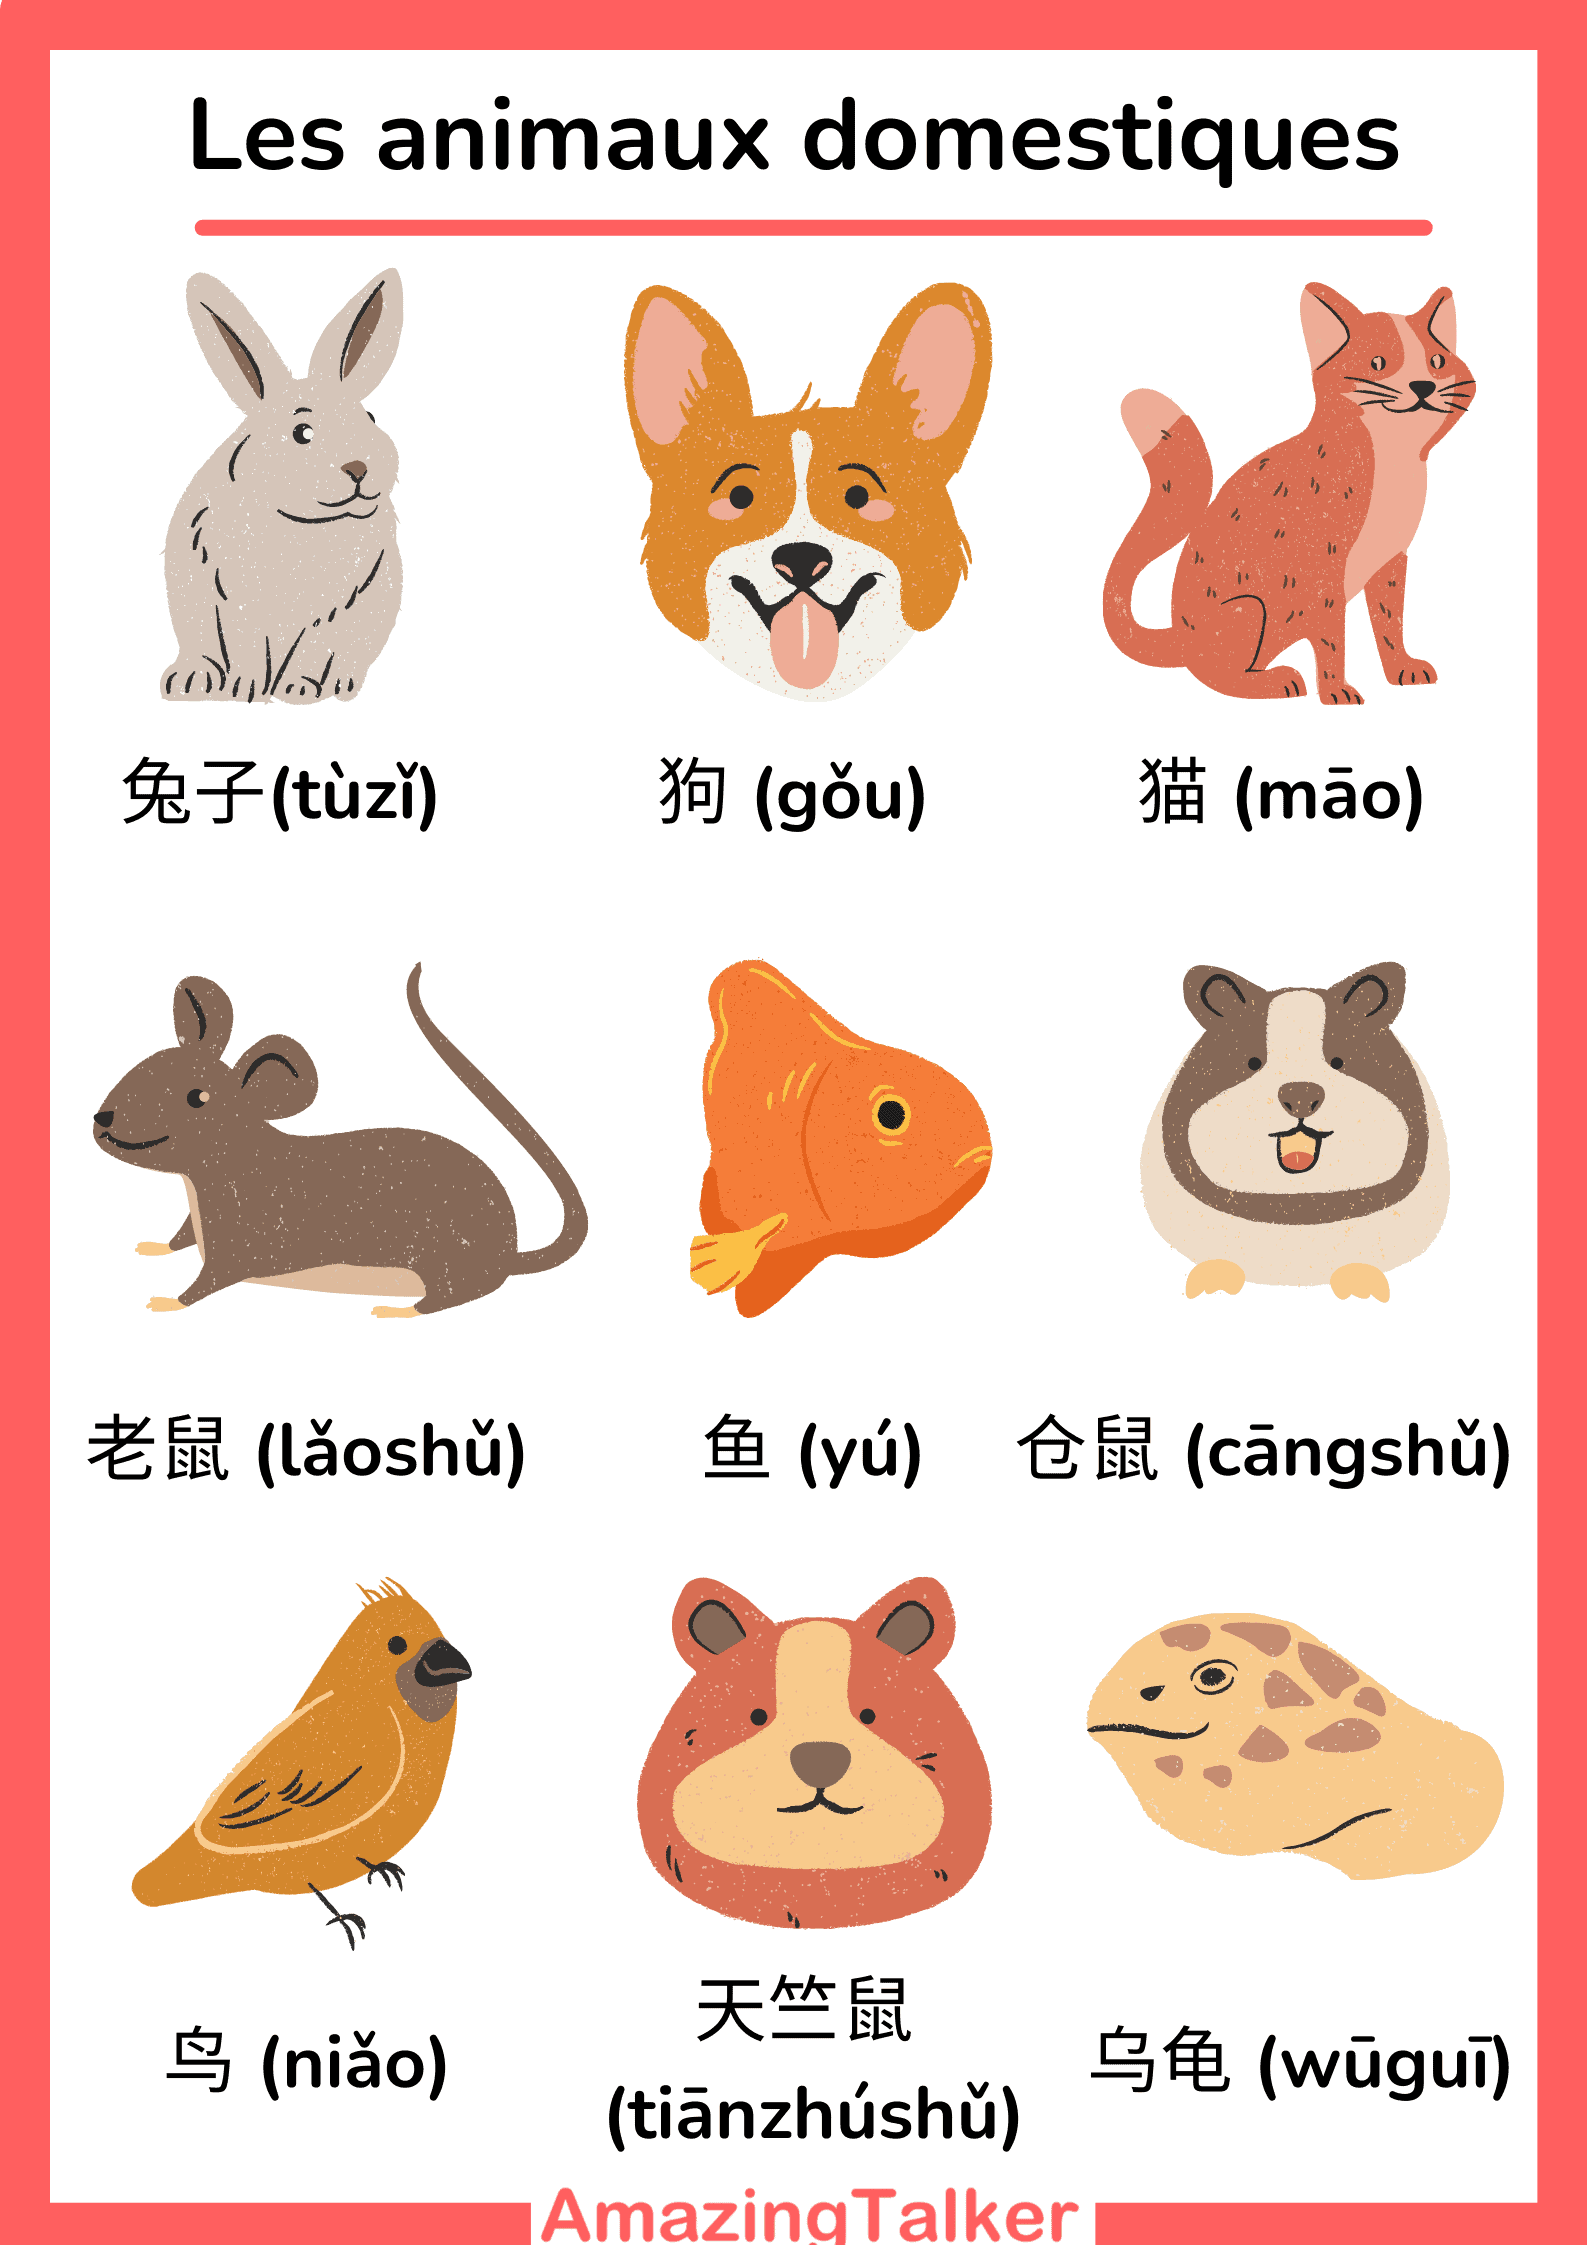 Les animaux domestiques en chinois